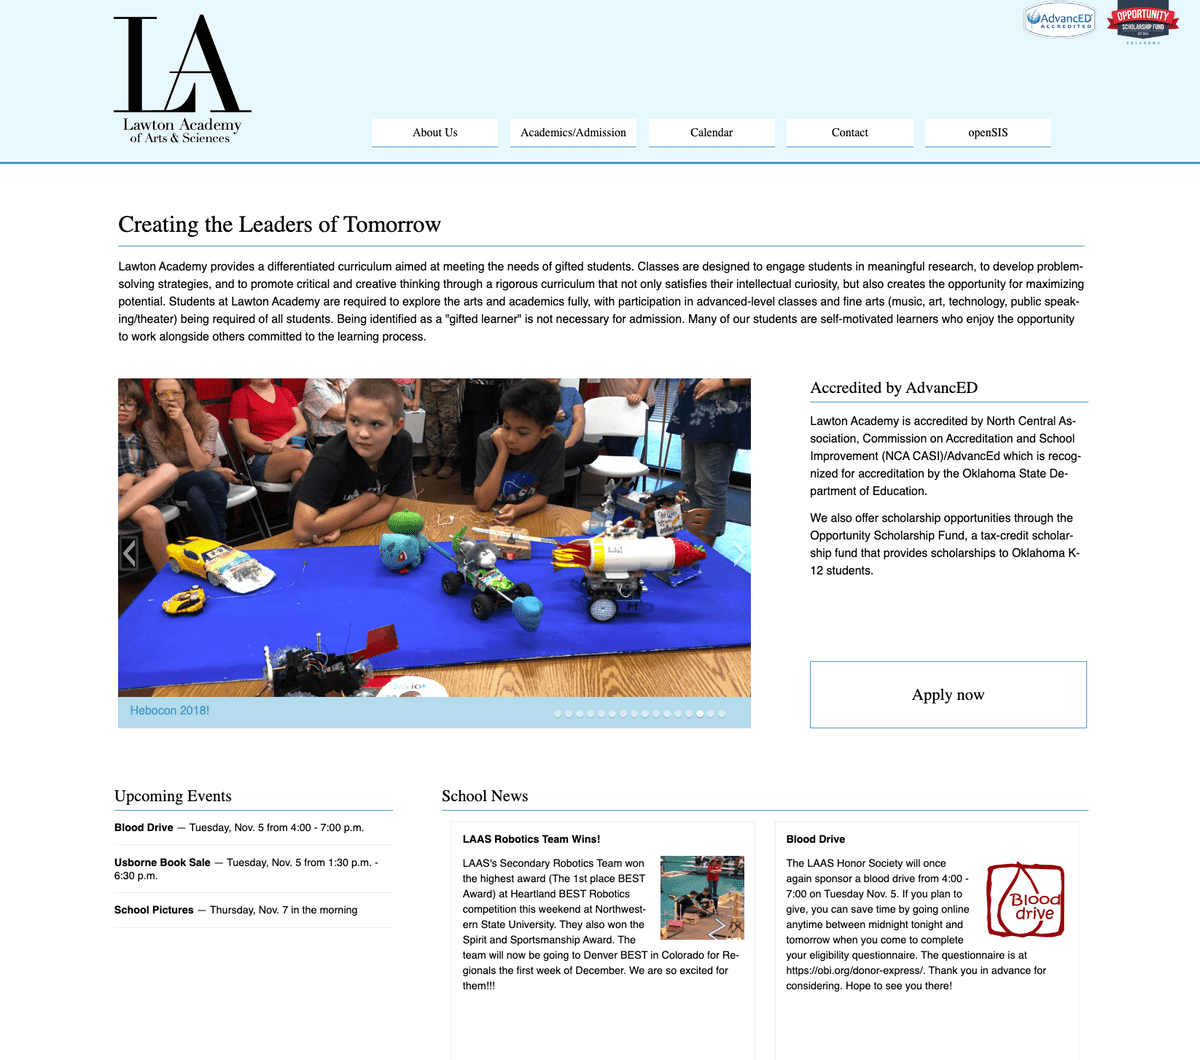 The Lawton Academy Website